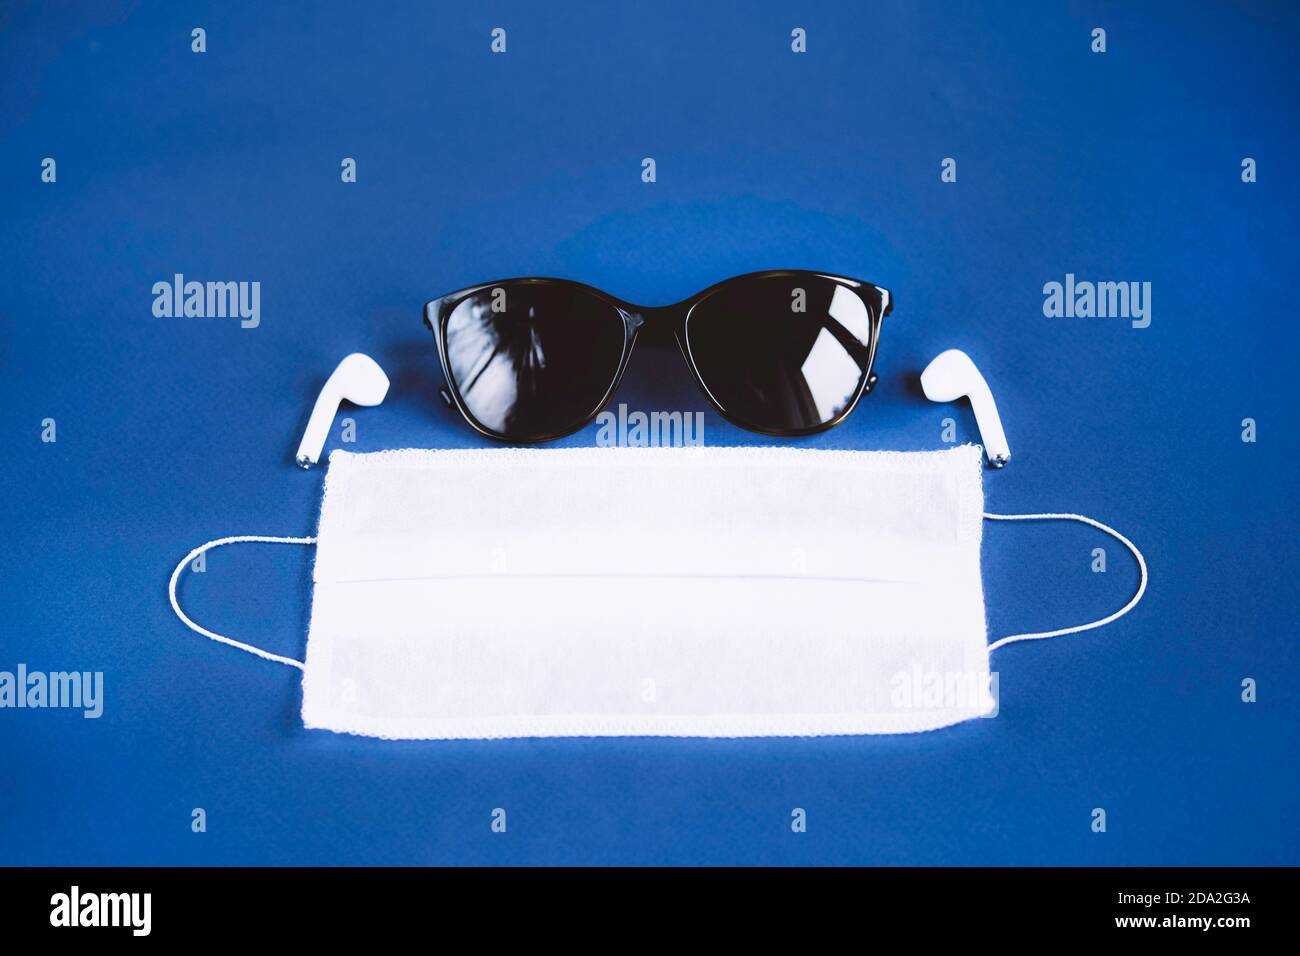 Accessori essenziali per la persona moderna su sfondo blu scuro. Occhiali da sole, maschera medica e cuffie wireless. Tendenze 2020. Foto Stock